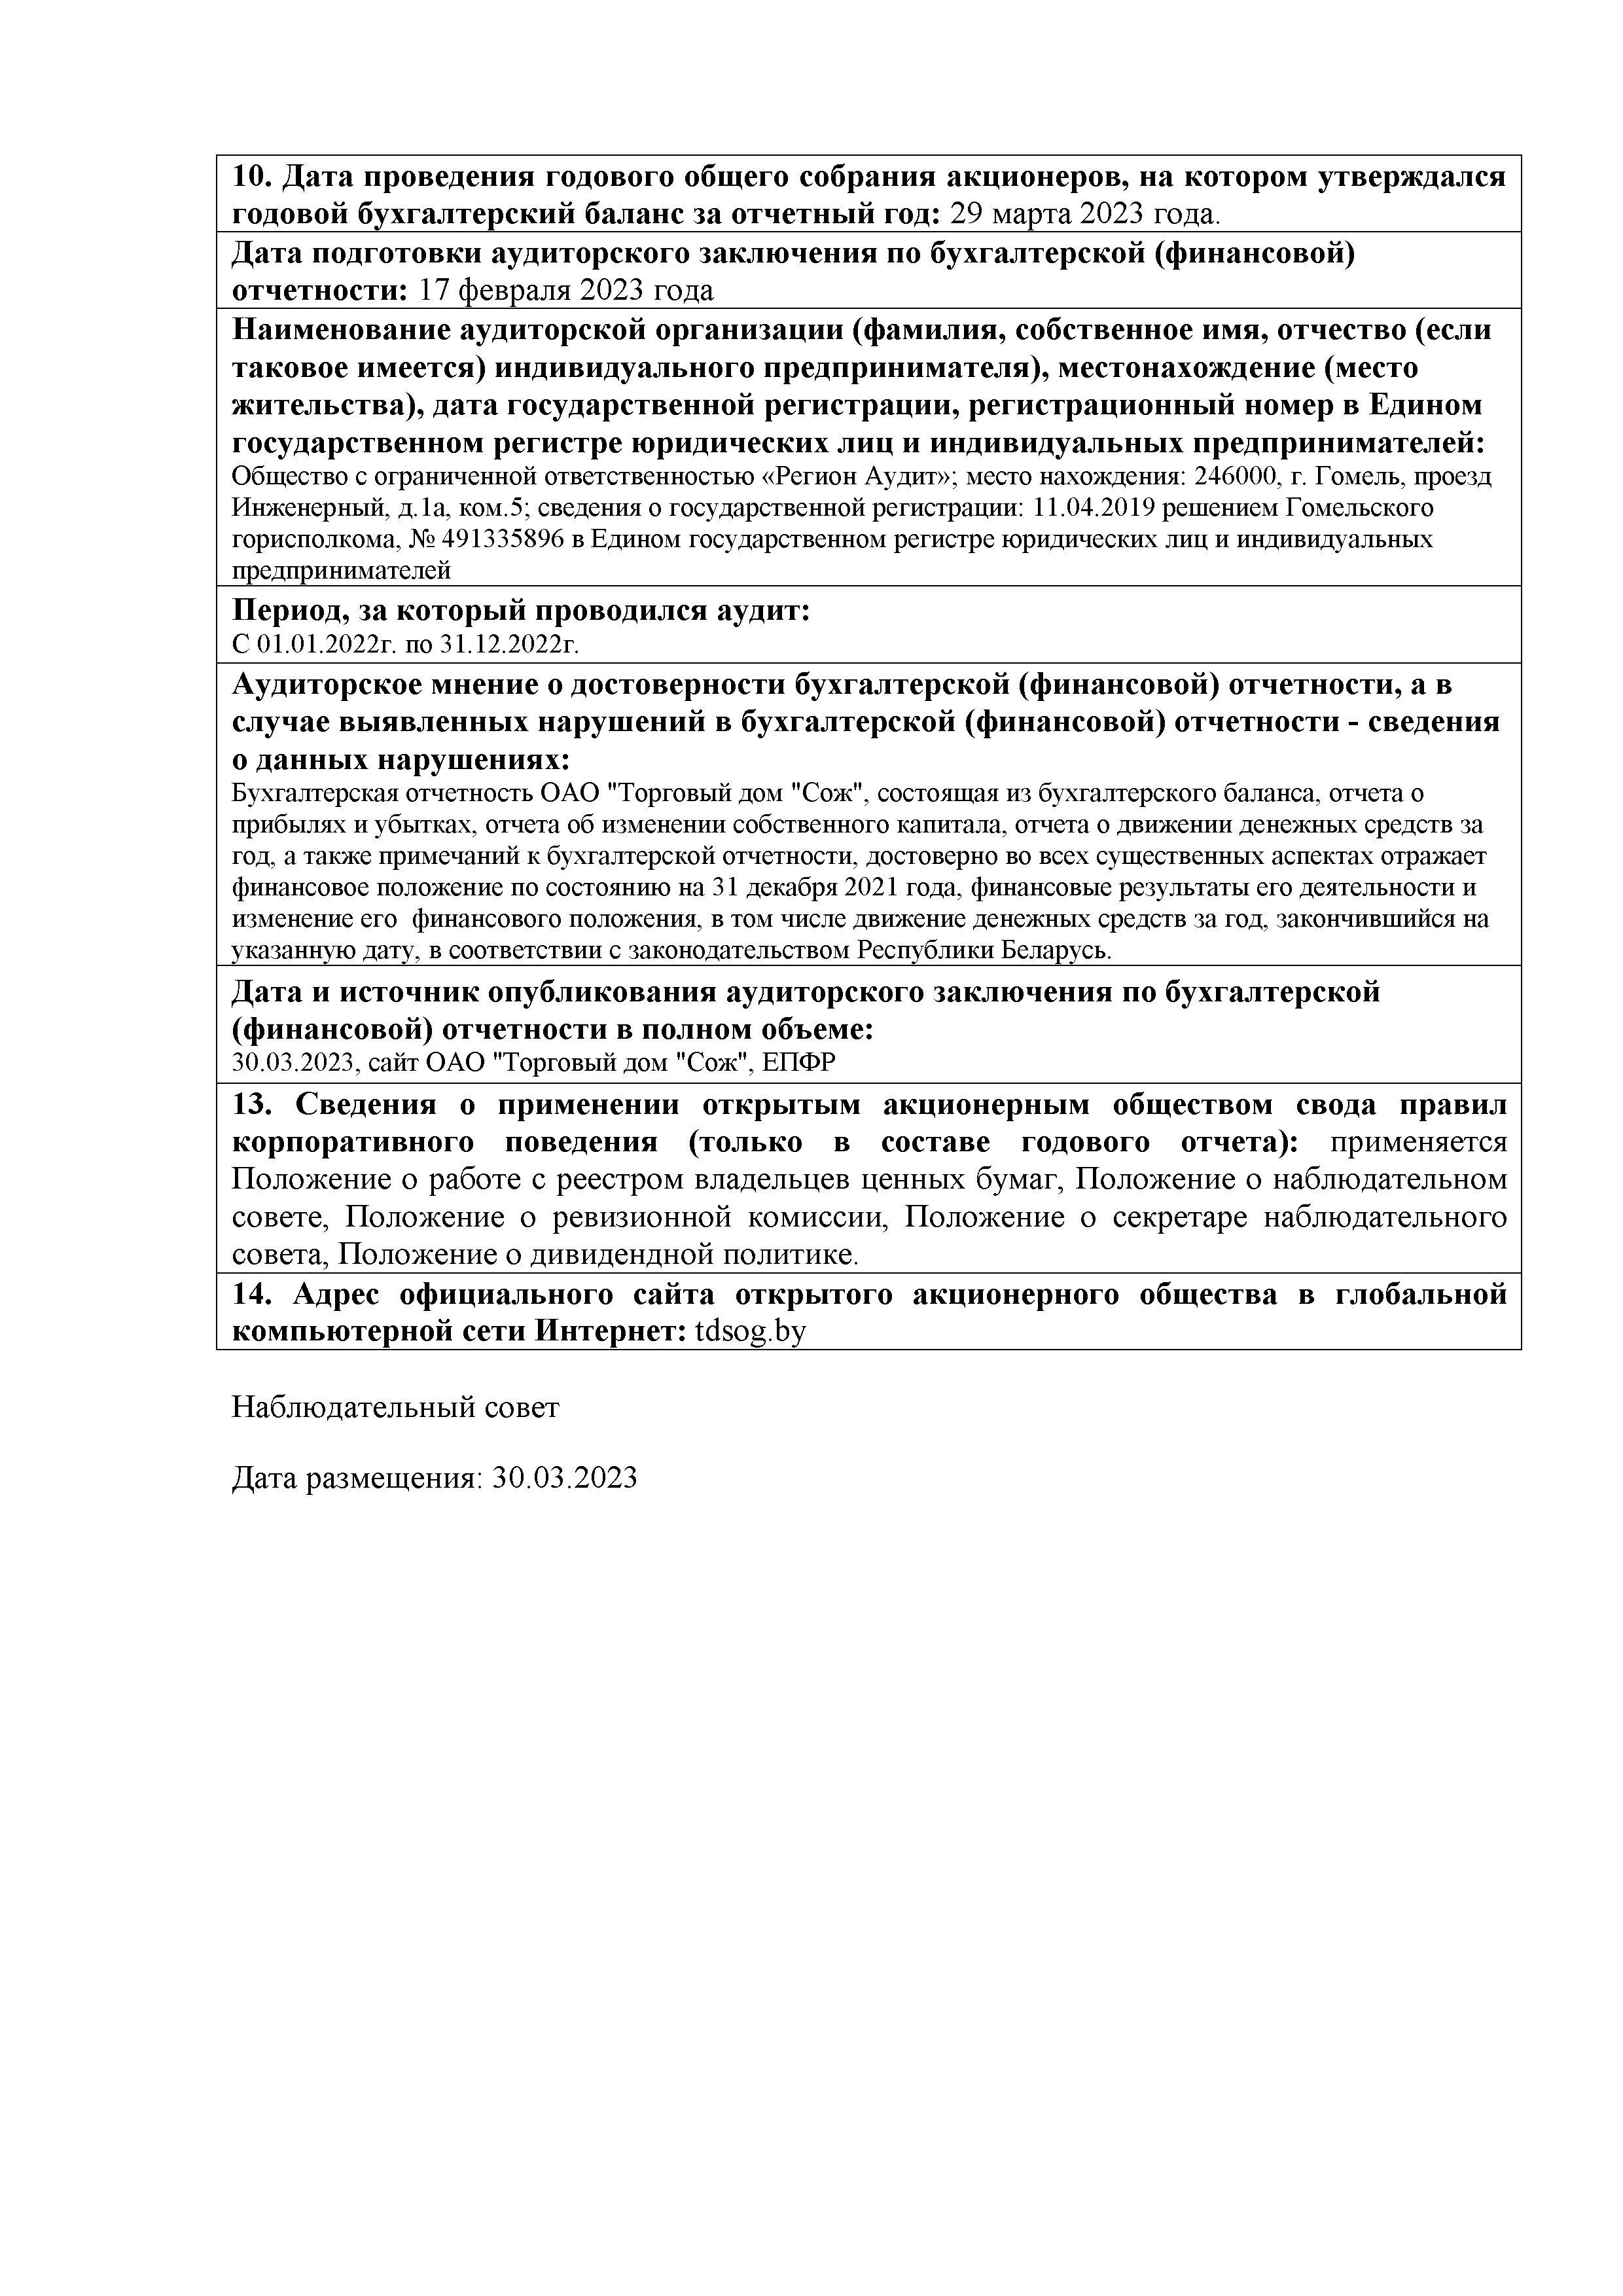 ОАО Торговый дом Сож - Годовой отчет эмитента (размещение на портал, сайт) на сайте 2022 год